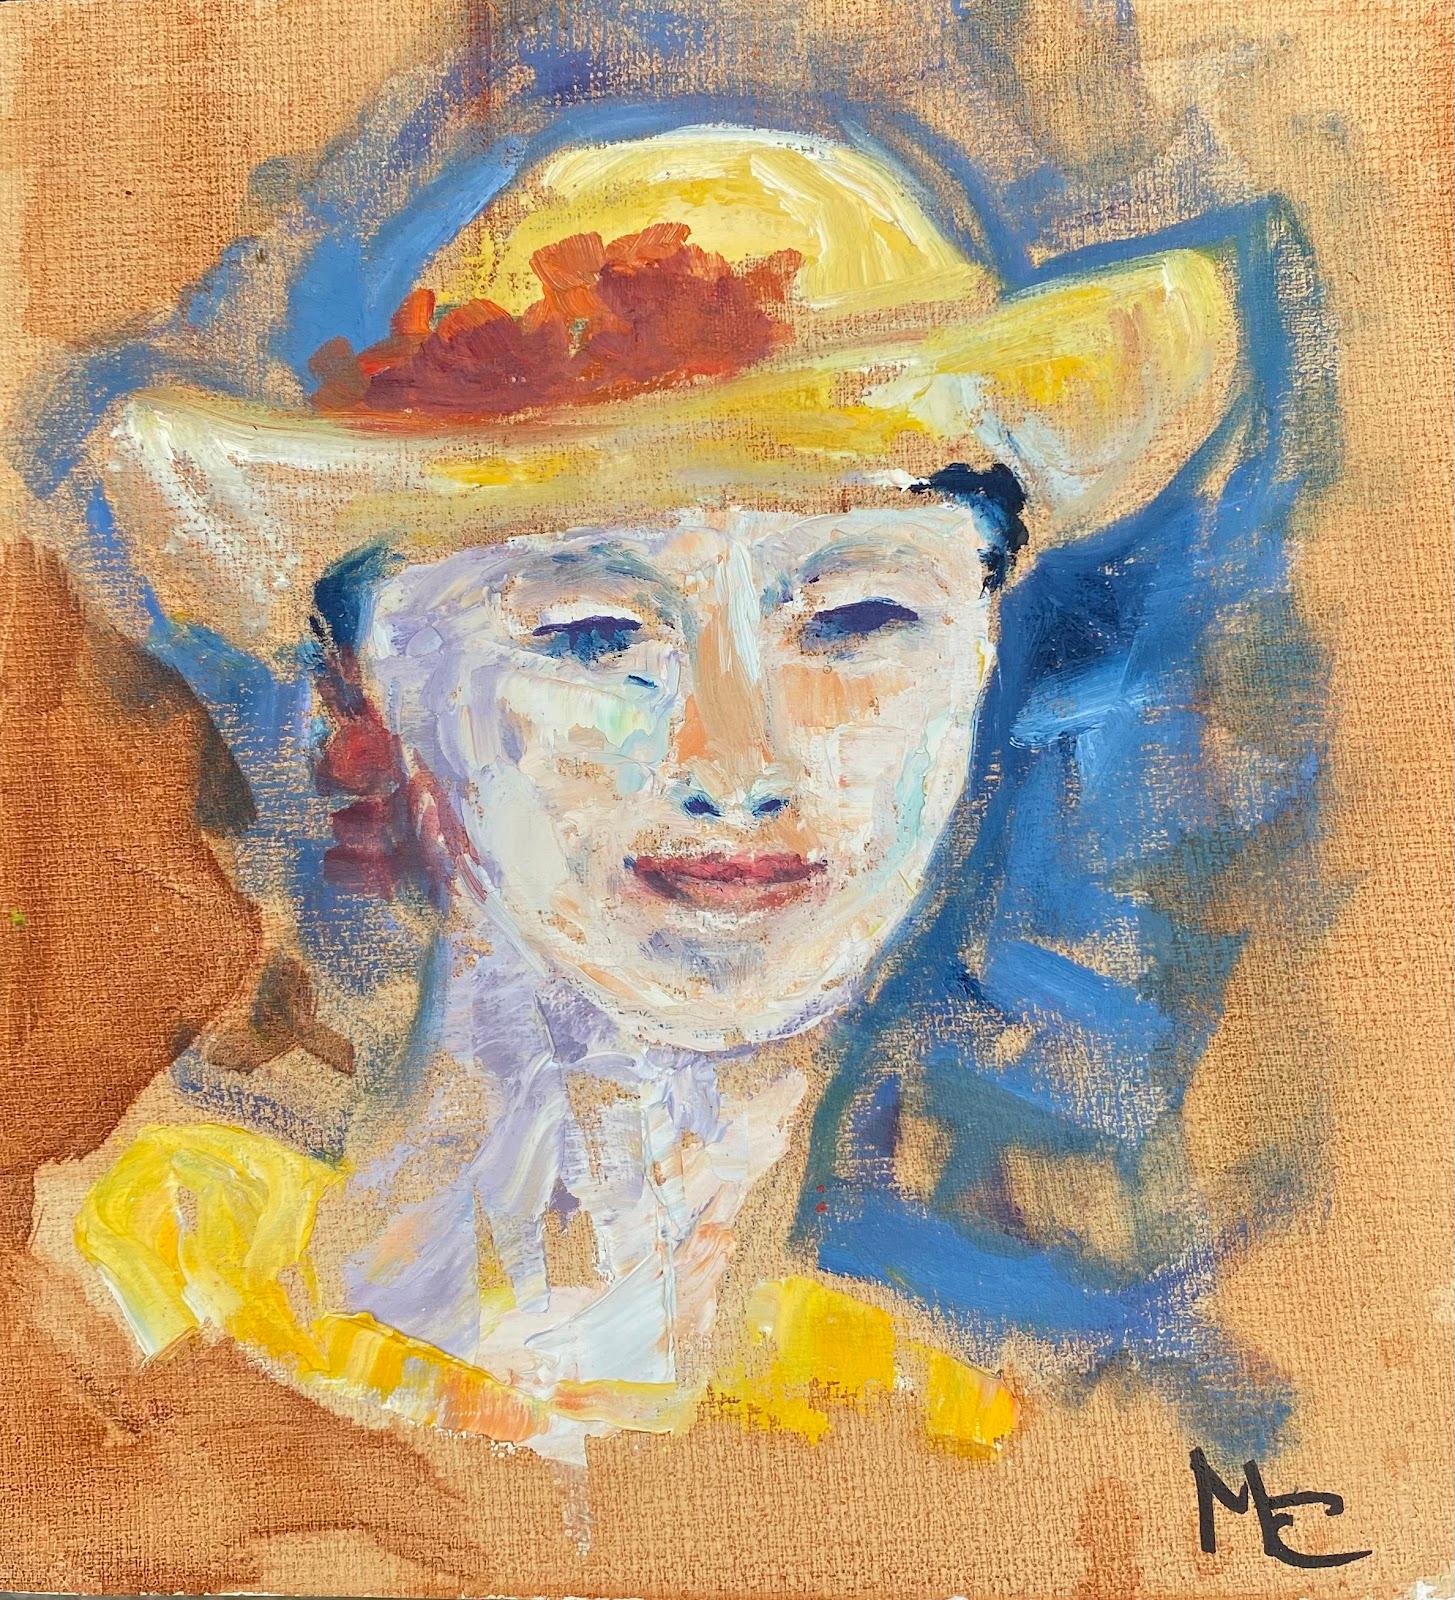 Portrait Painting Maggy Clarysse - Peinture à l'huile impressionniste française de portrait de femme élégante, aux couleurs vives et colorées